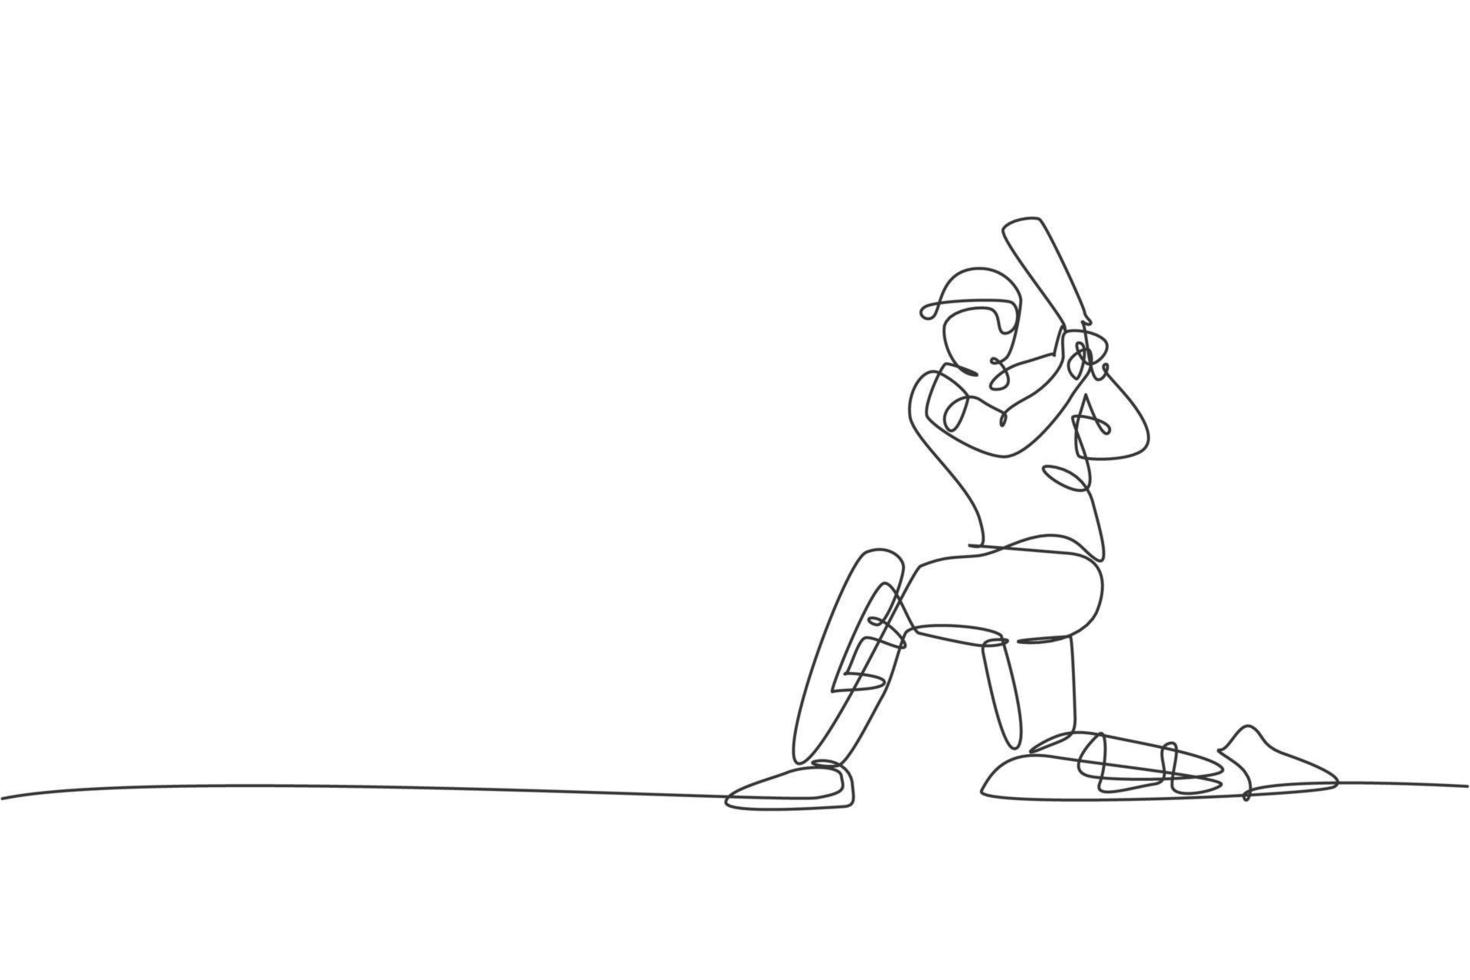 eine einzige Strichzeichnung eines jungen, energischen Cricketspielers, der mit dem Knie auf der Bodenvektorillustration steht. Konzept der Sportmesse. modernes Design mit durchgehender Linie für Cricket-Wettkampfbanner vektor